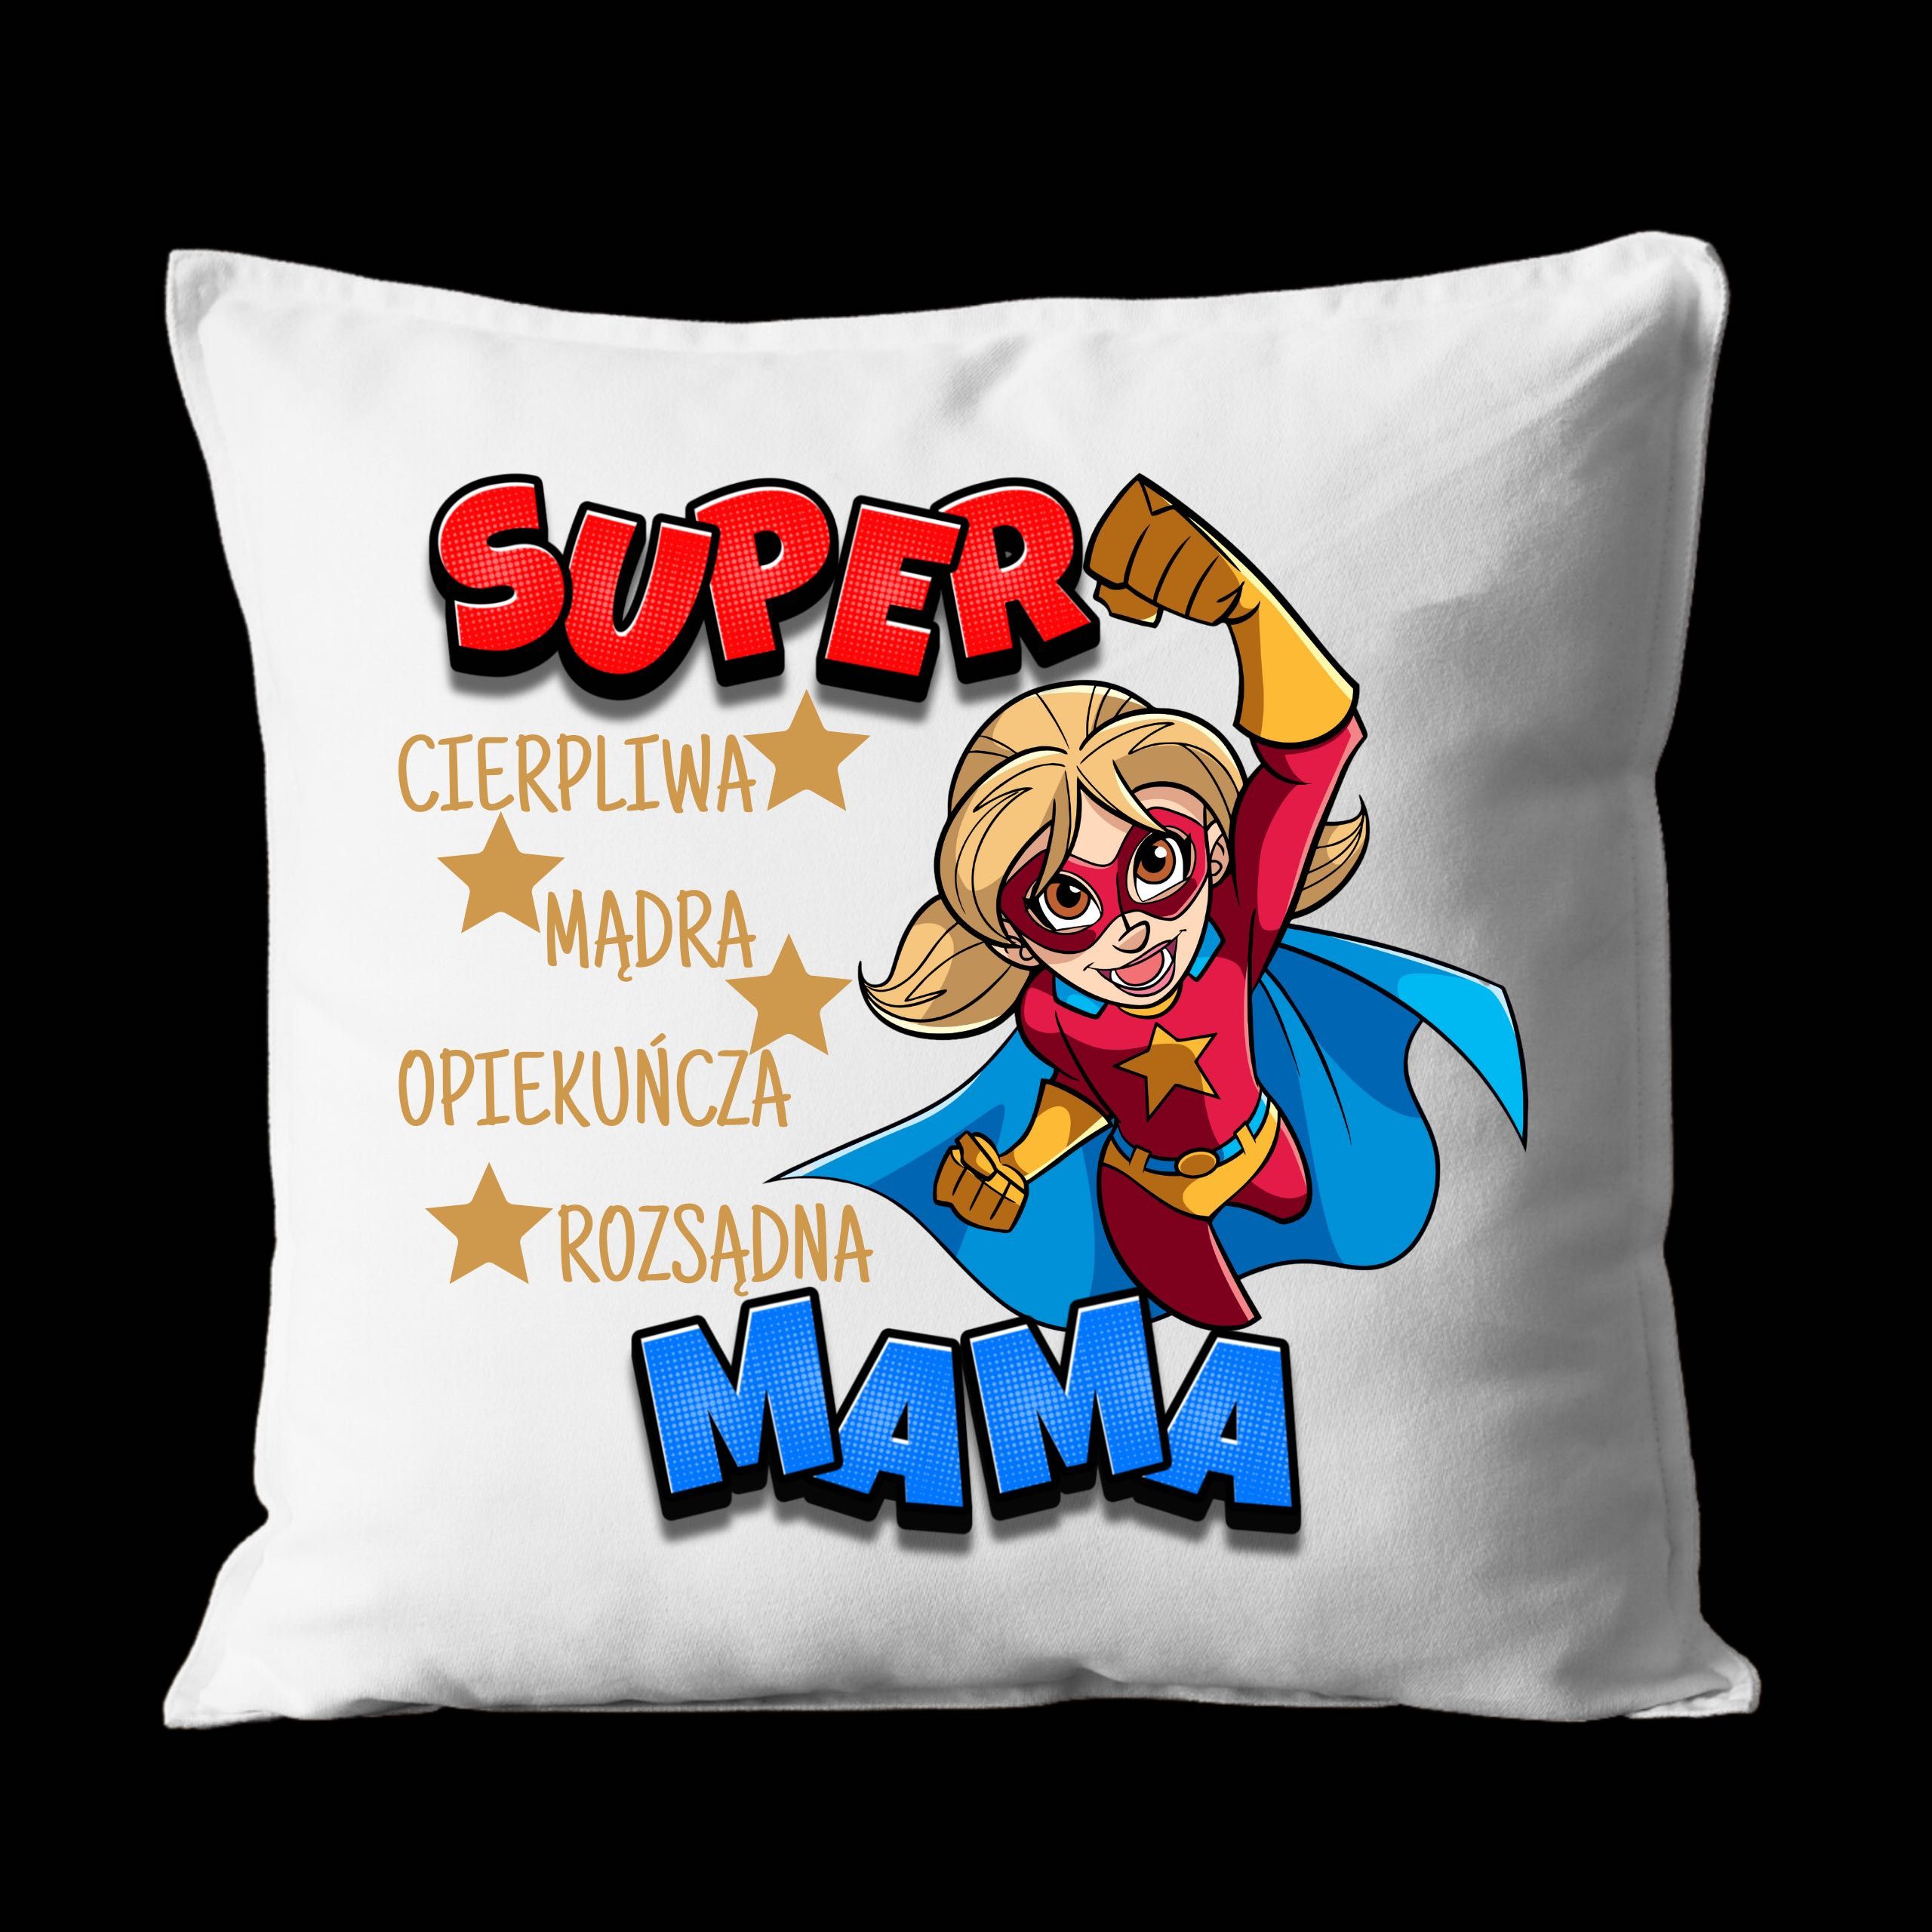 Zestaw na dzień matki kubek + poduszka dla mamy SUPER MAMA PREZENT